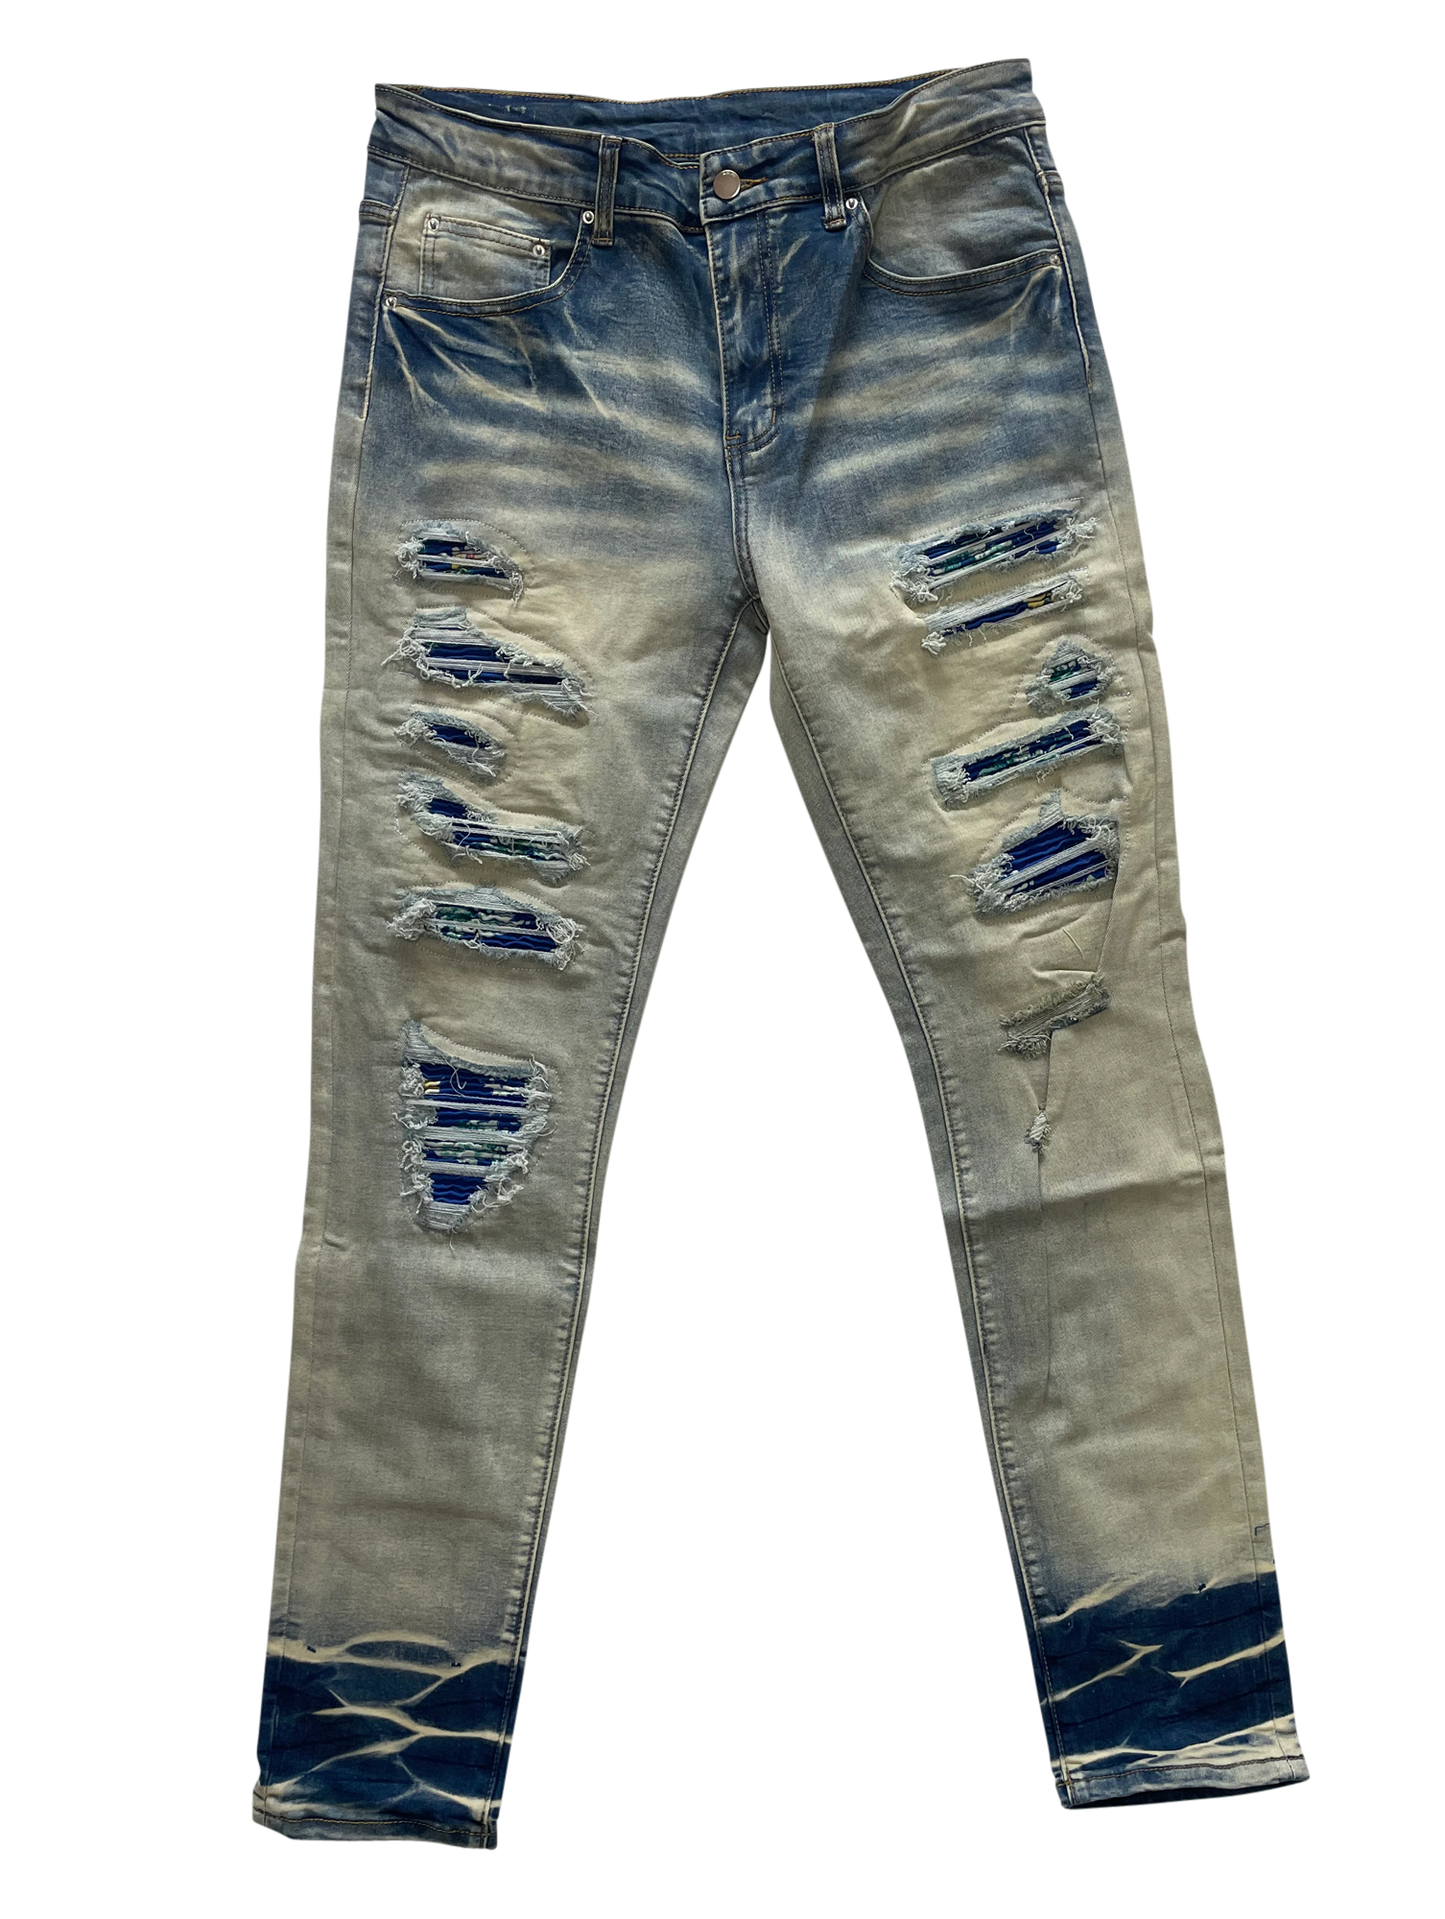 CSL "Ocean Reaper" Jeans